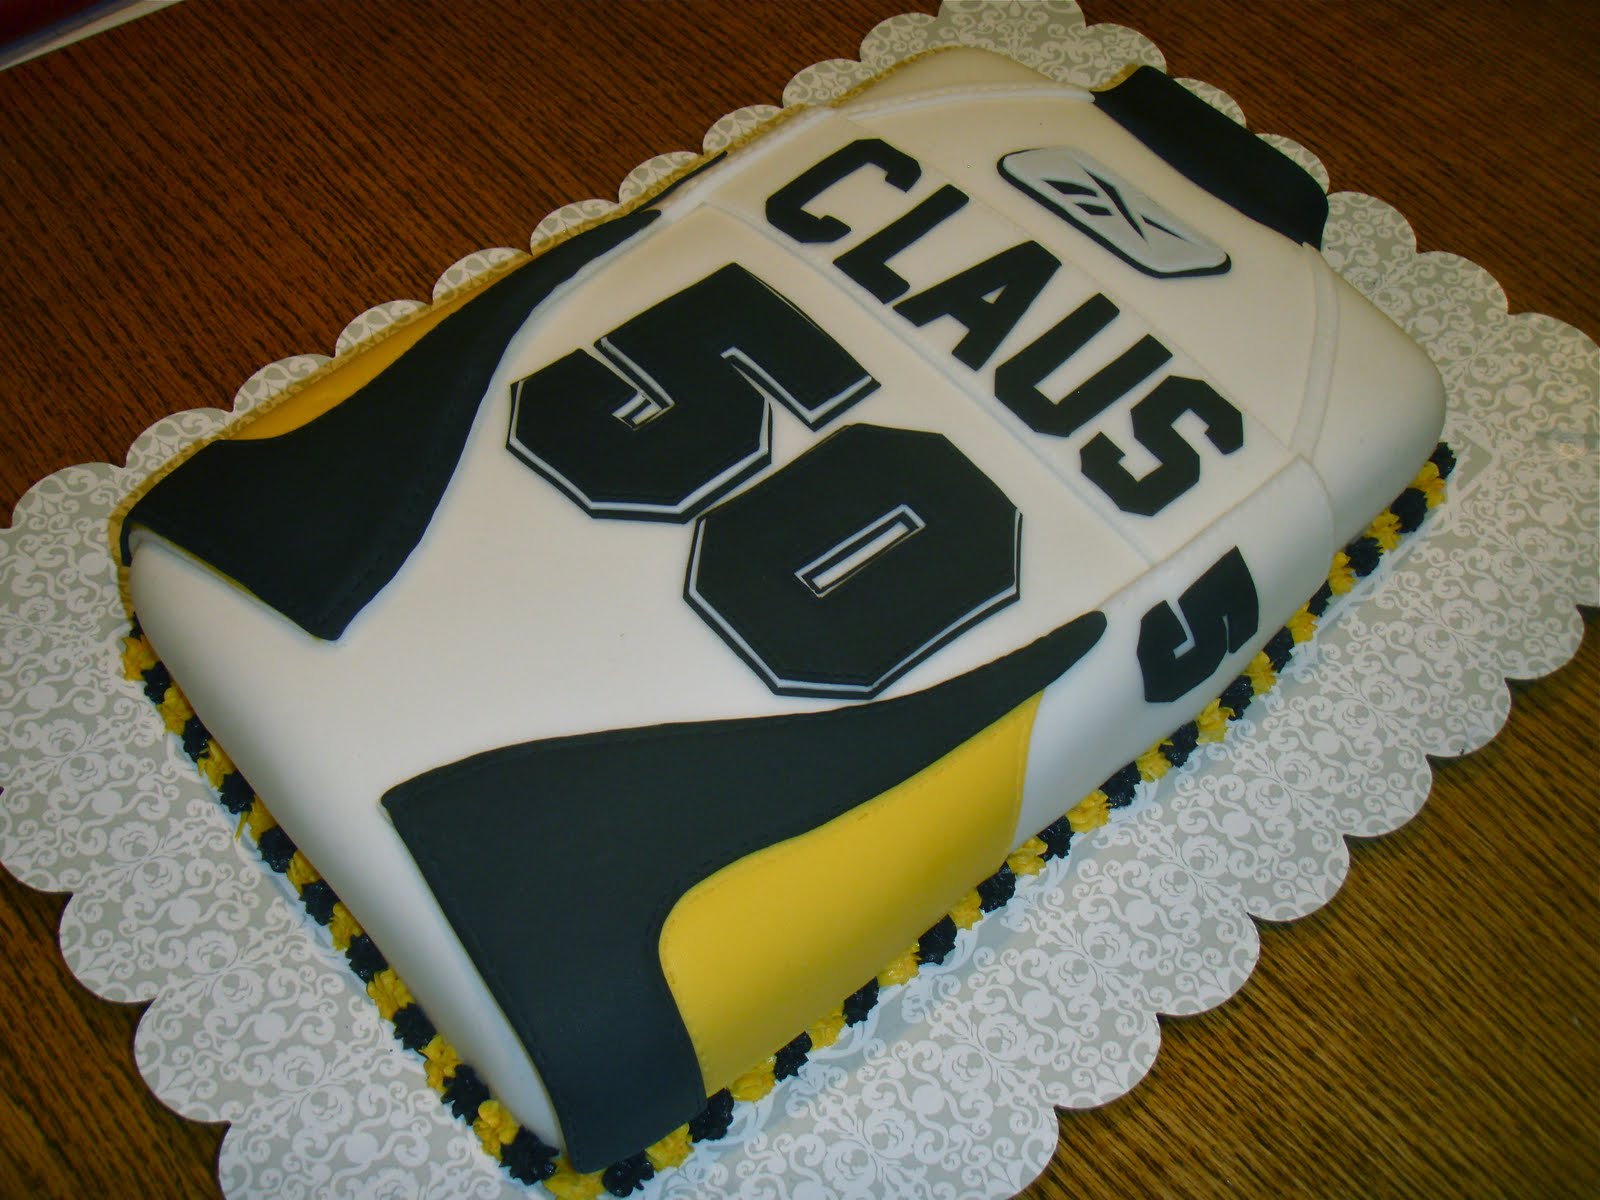 50th Birthday Cake | 50th birthday cake | Pinterest ...